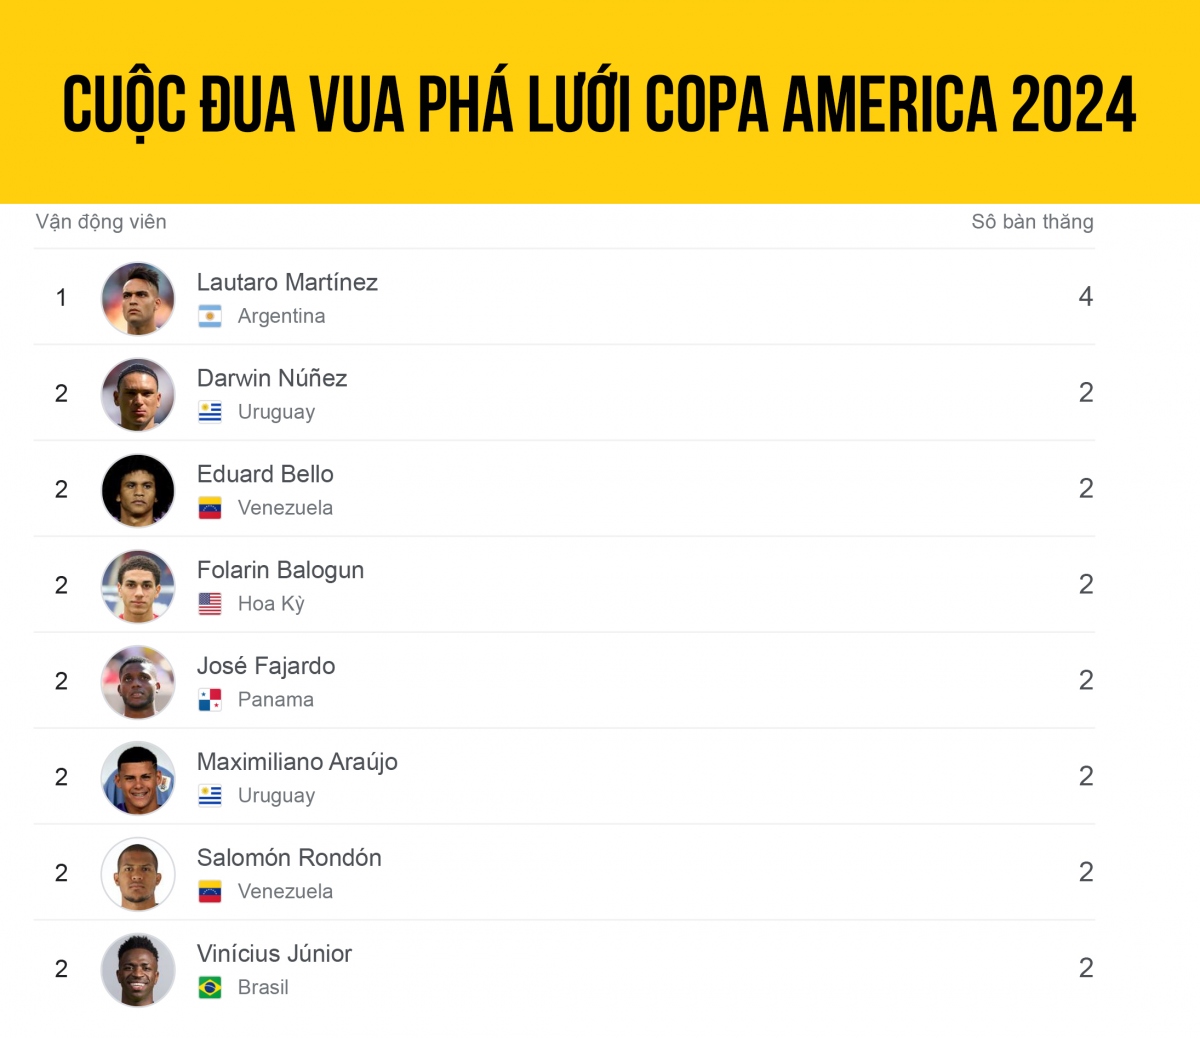 Bảng xếp hạng “Vua phá lưới” Copa America 2024 mới nhất